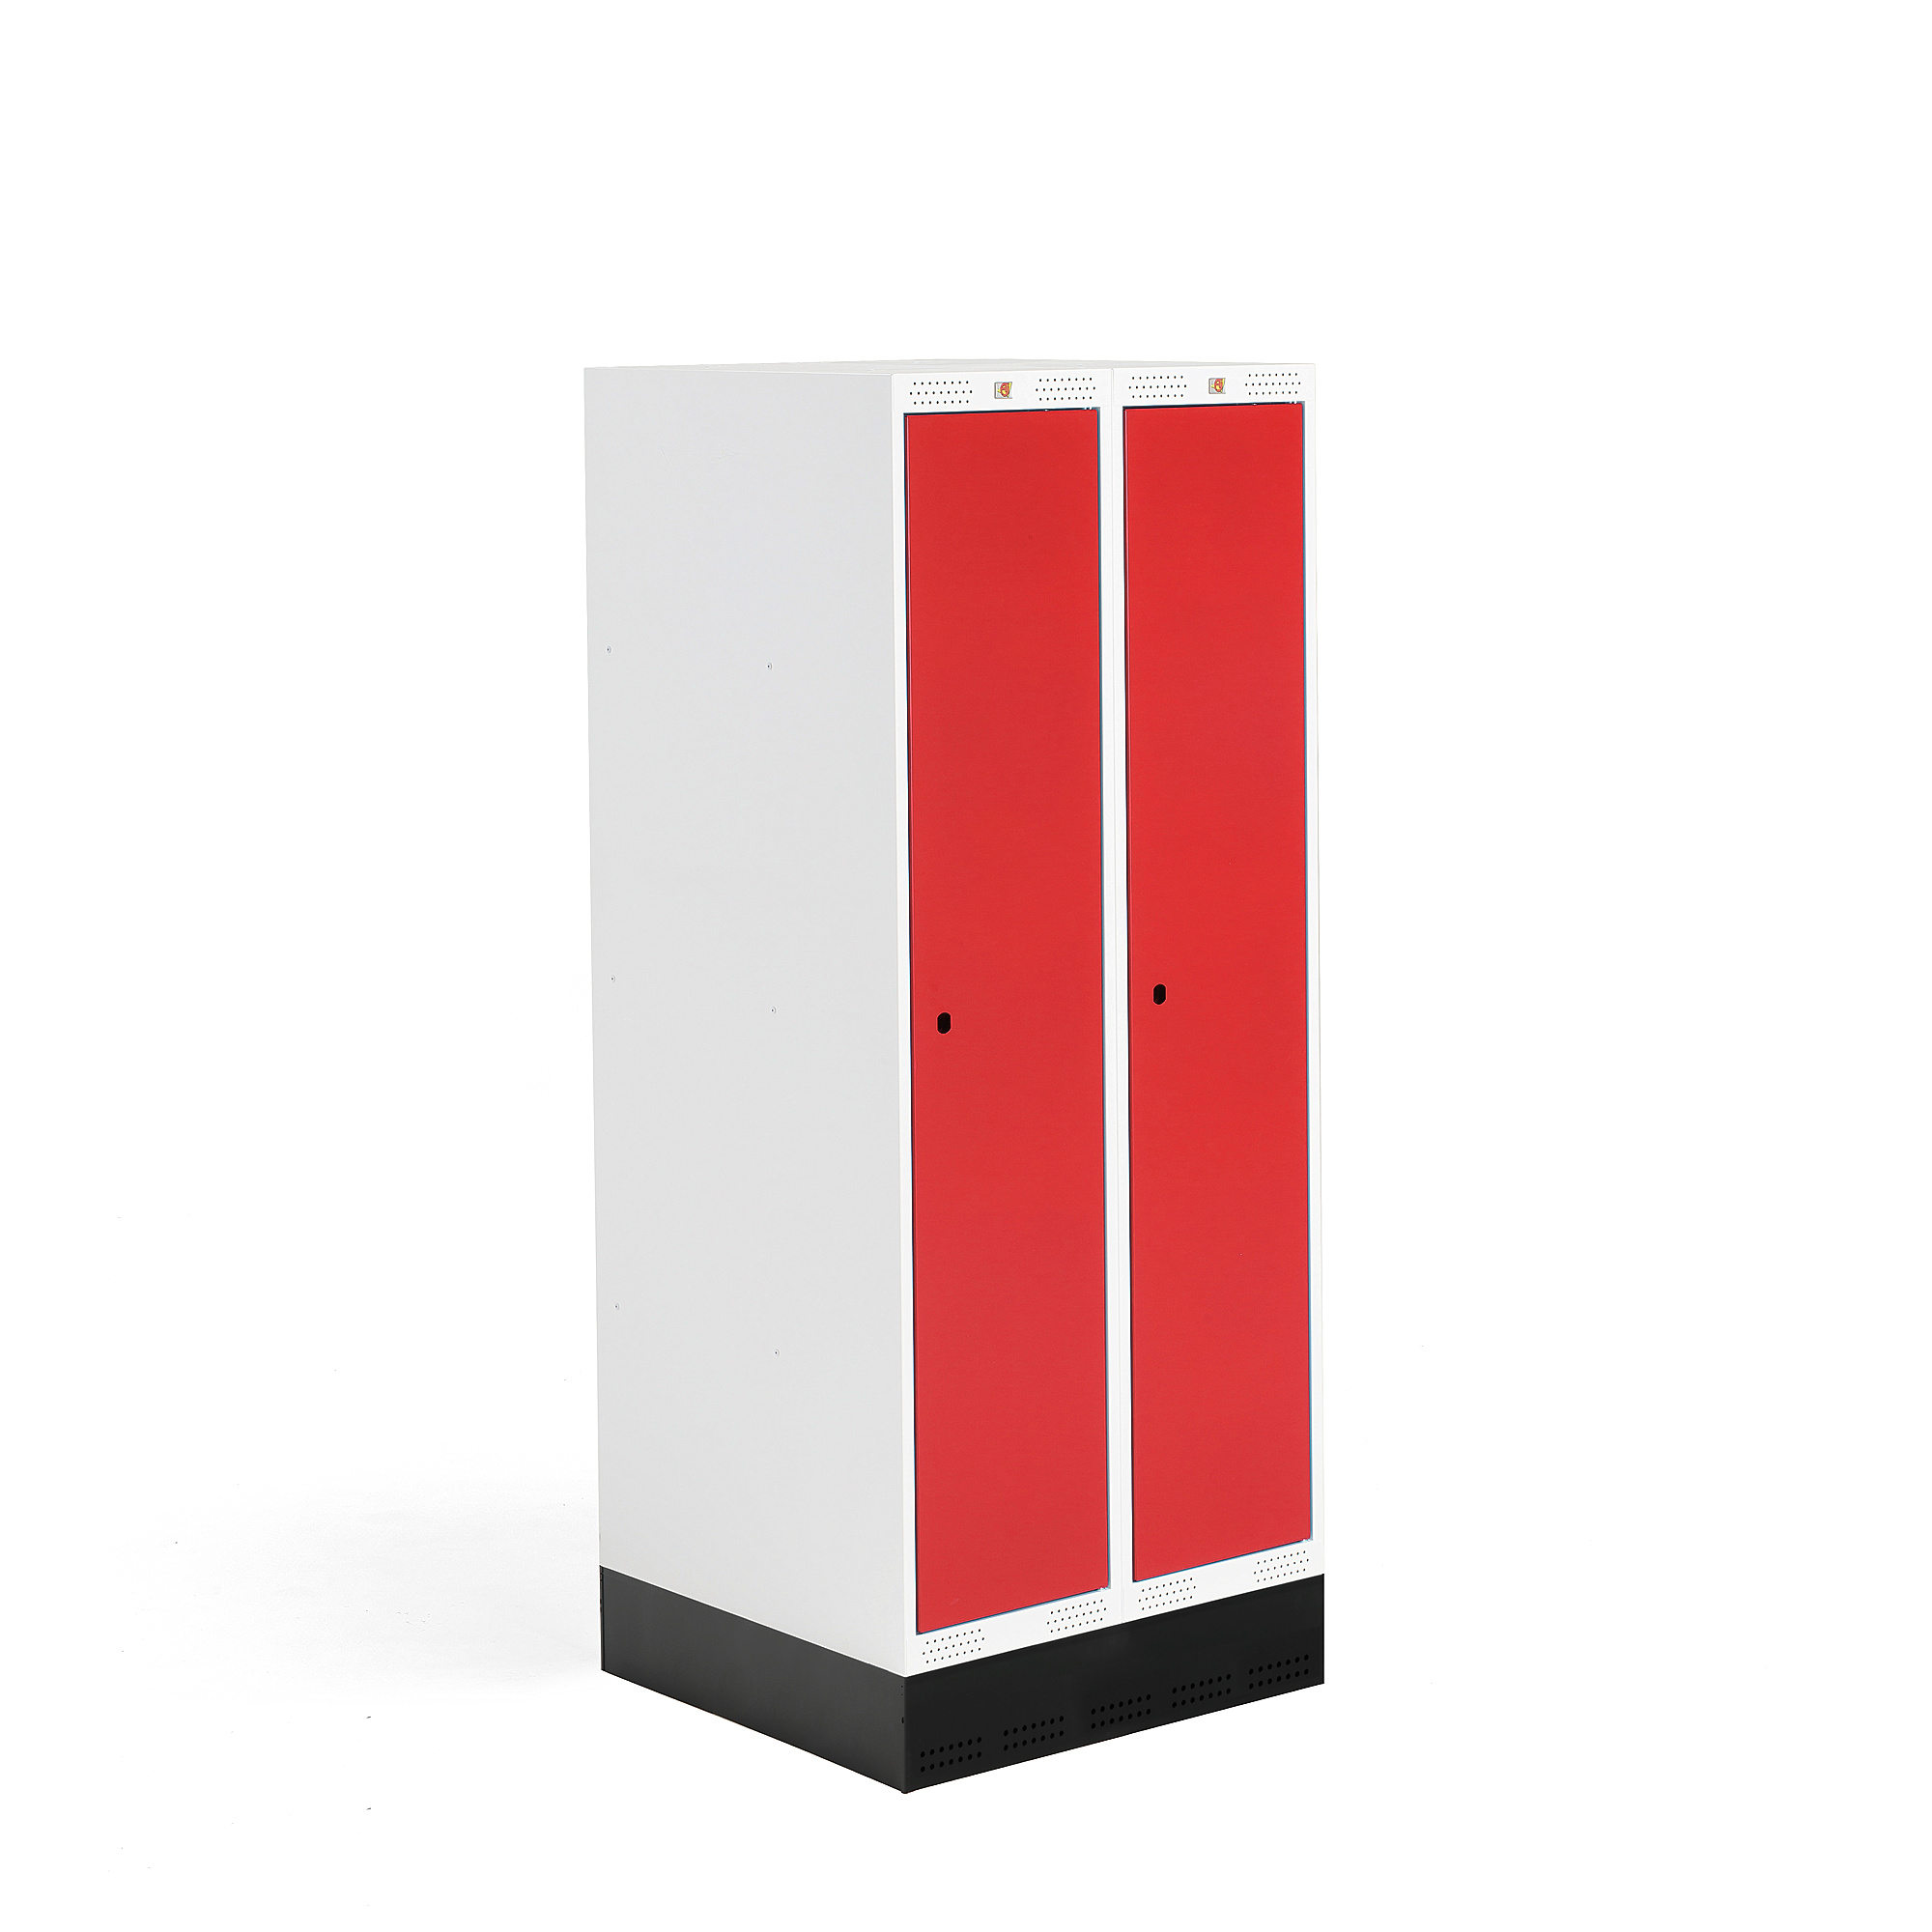 Šatní skříňka ROZ, 2 sekce, se soklem, 1510x600x550 mm, červená